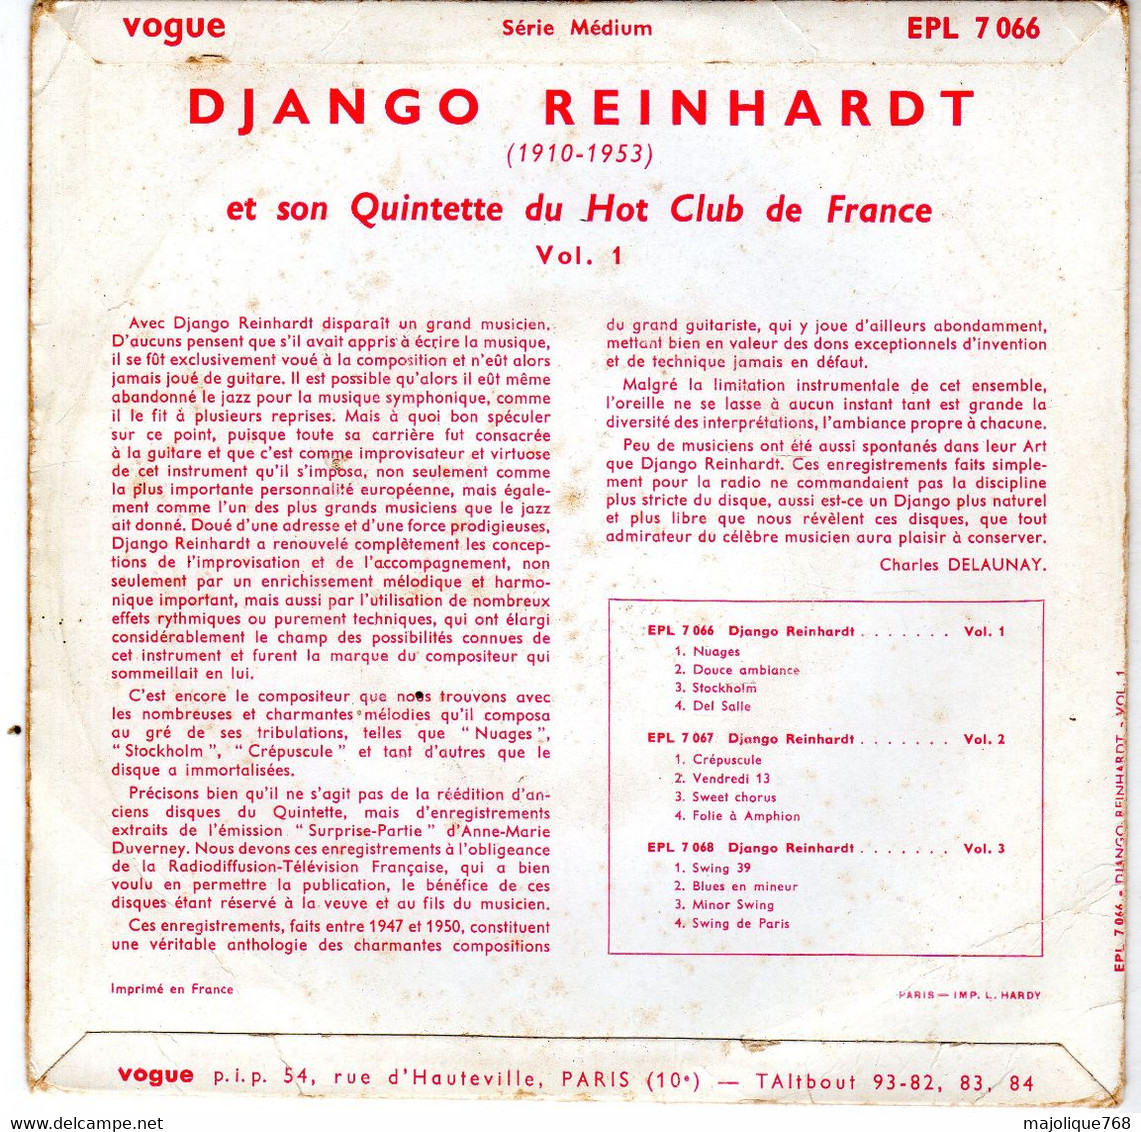 Disque 45 T De Django Reinhardt  Et Son Quintette Du Hot Club De France – Vol. 1 - Nuage - Vogue EPL 7066 - France 1955 - Jazz